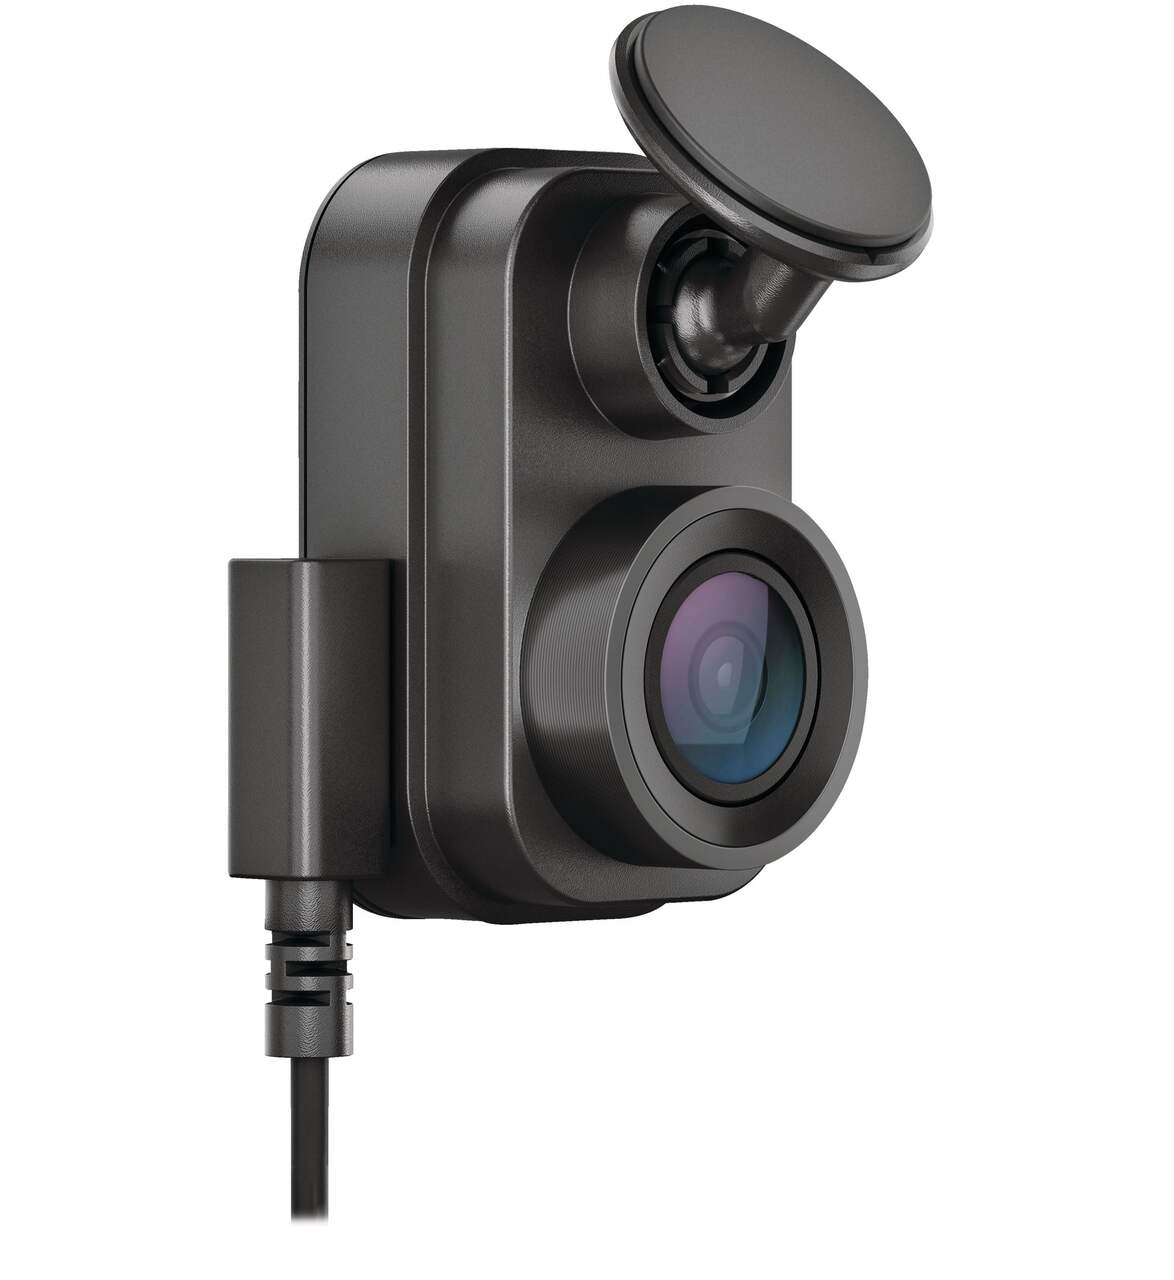 Caméra de tableau de bord Garmin 1080 p HD Mini 2 avec Wi-Fi